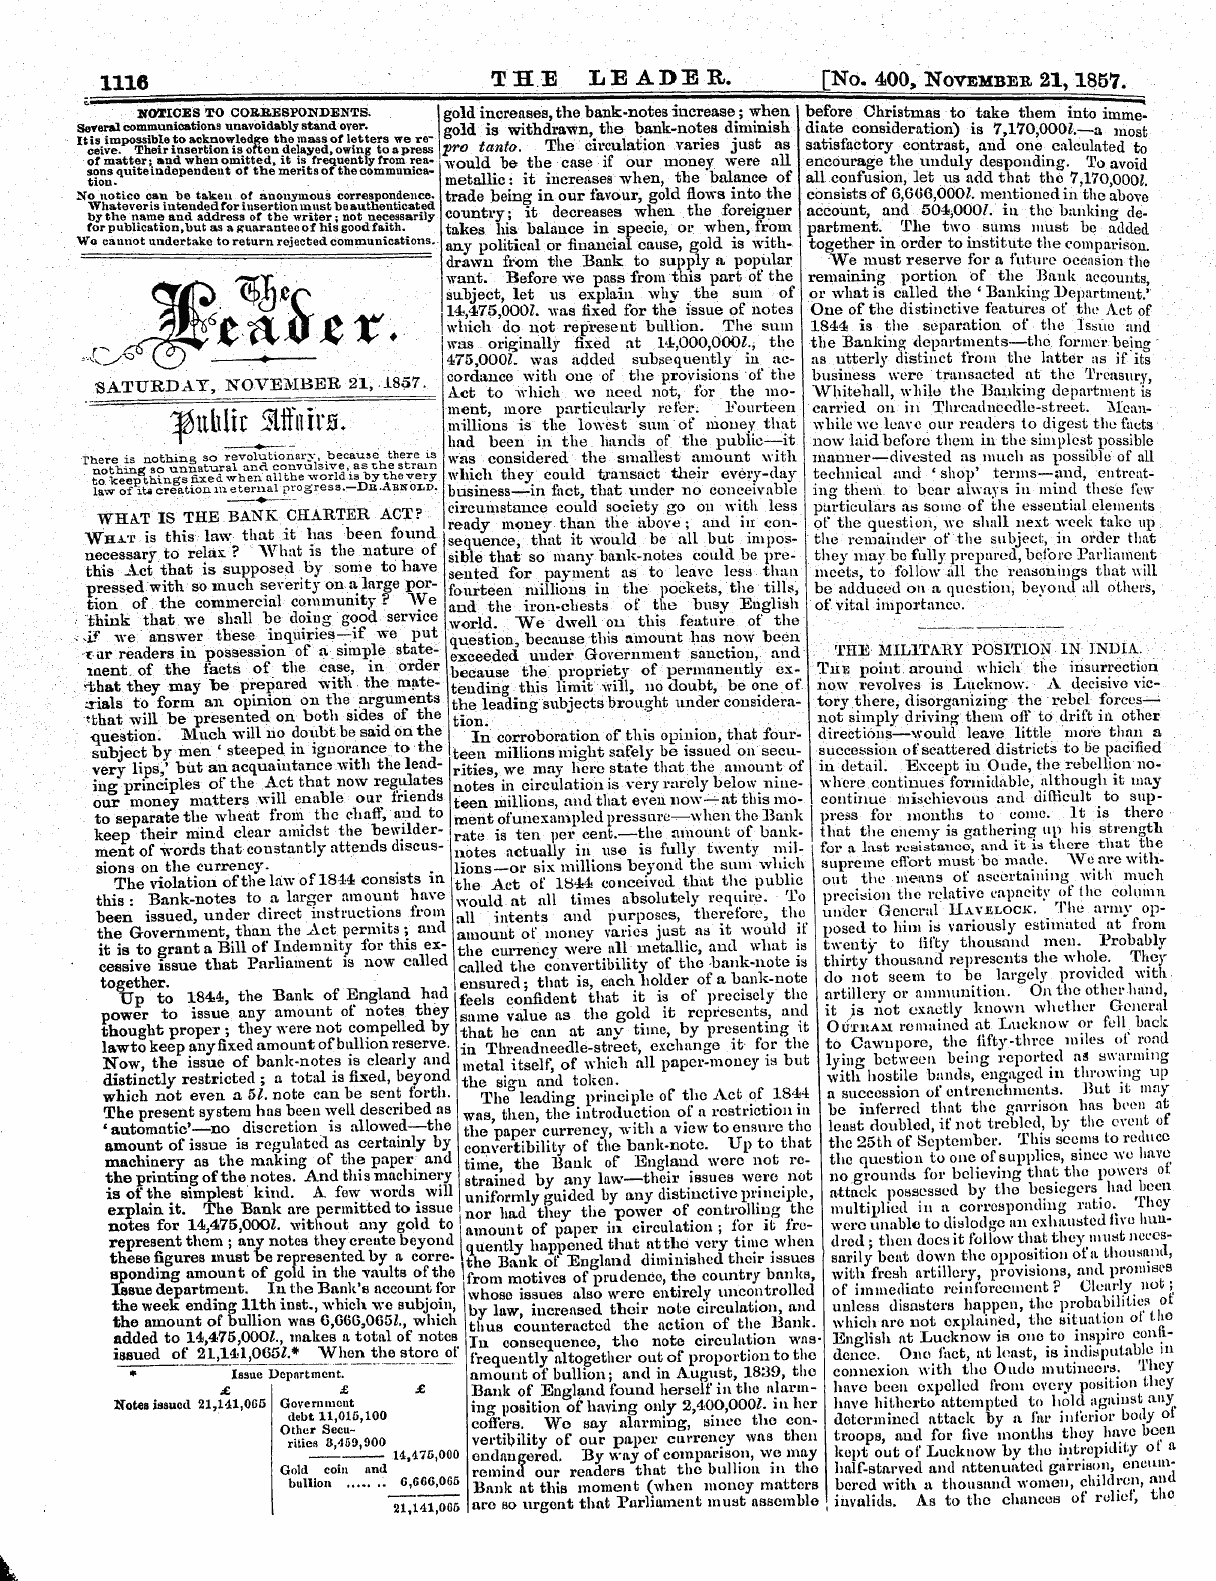 Leader (1850-1860): jS F Y, 2nd edition - &Lt;5ip ^J *C